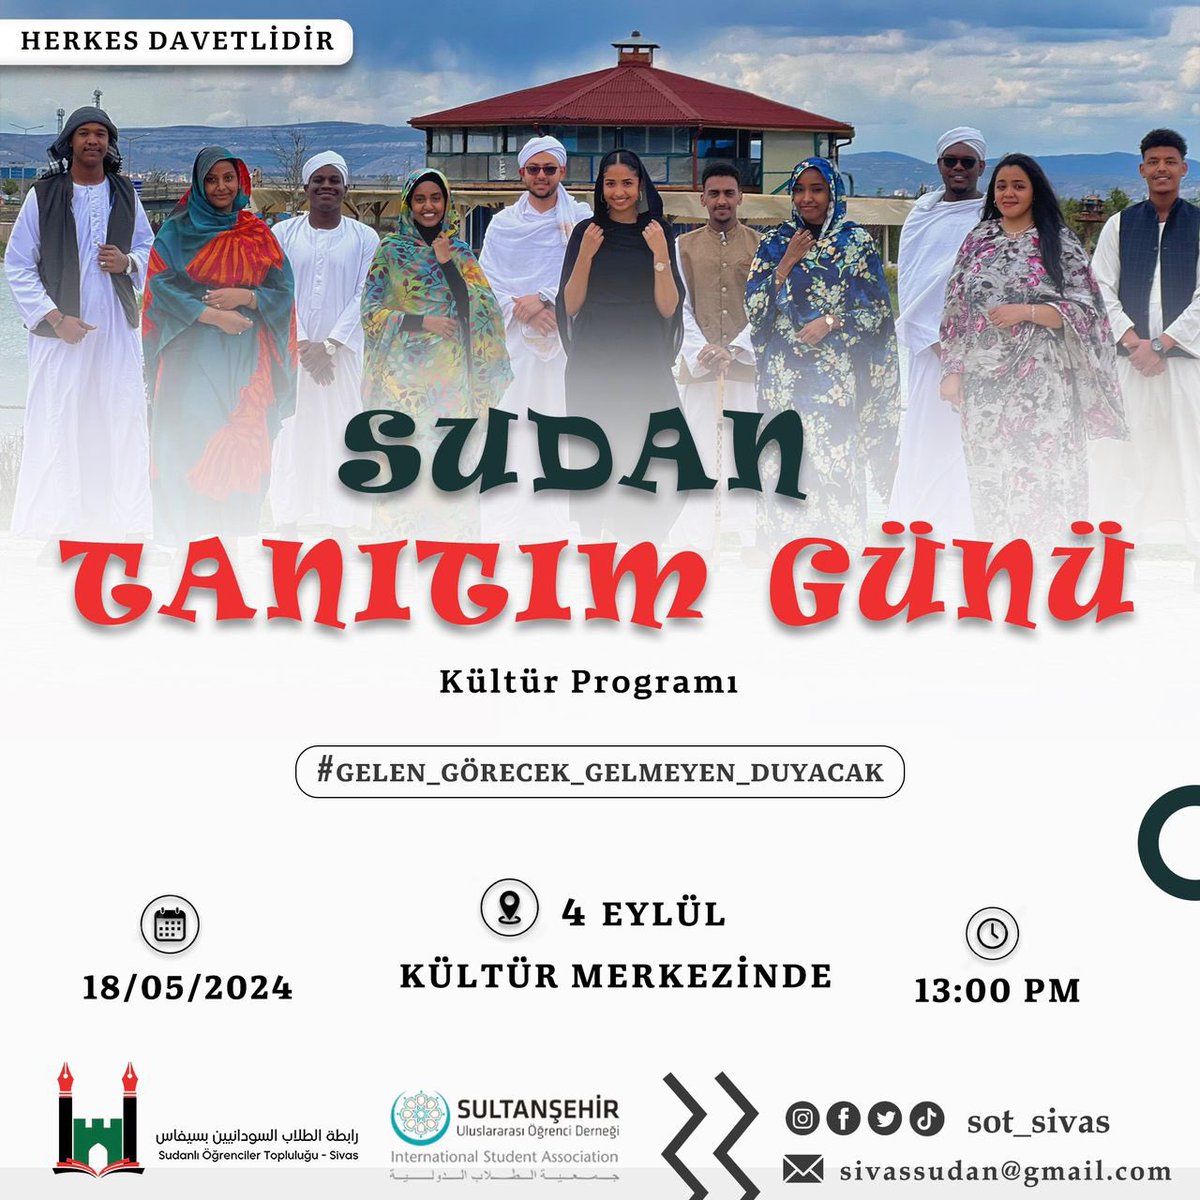 Sudanlı Öğrenciler Topluluğu isimli bir oluşum, Sivas’ta Sudan Tanıtım Günü düzenliyor.